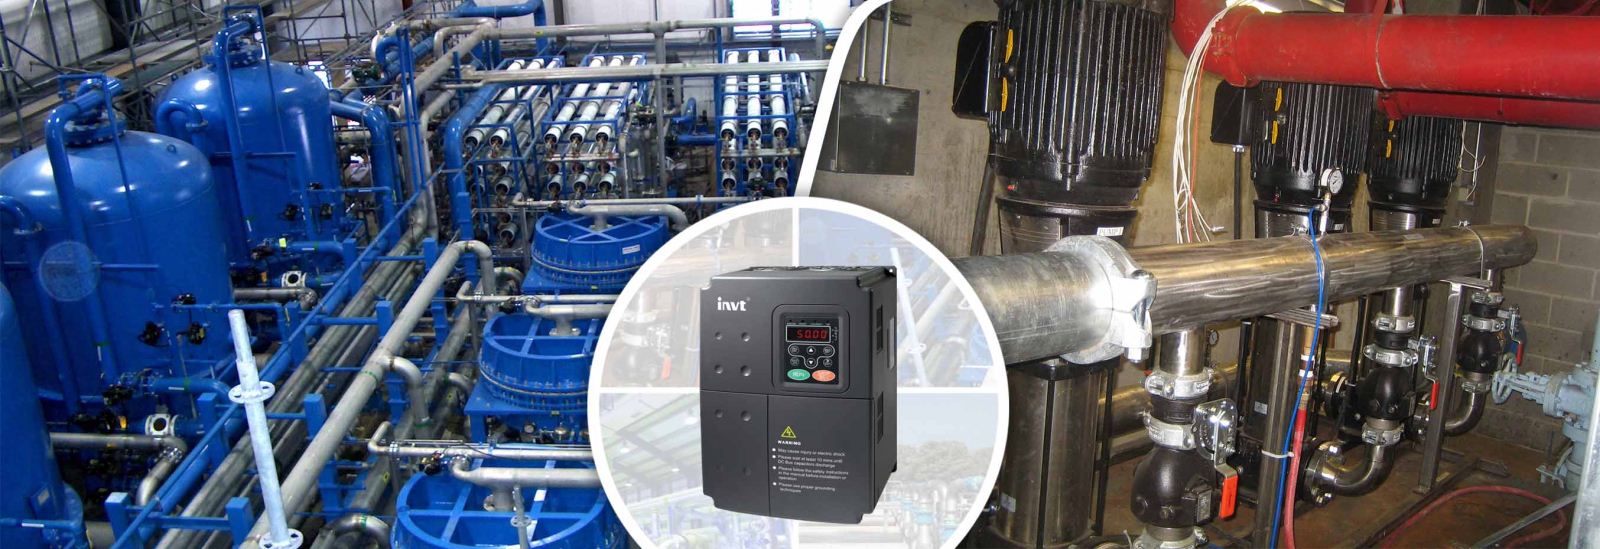 Biến tần CHV160A là dòng biến tần chuyên dụng cho cấp nước của hãng INVT